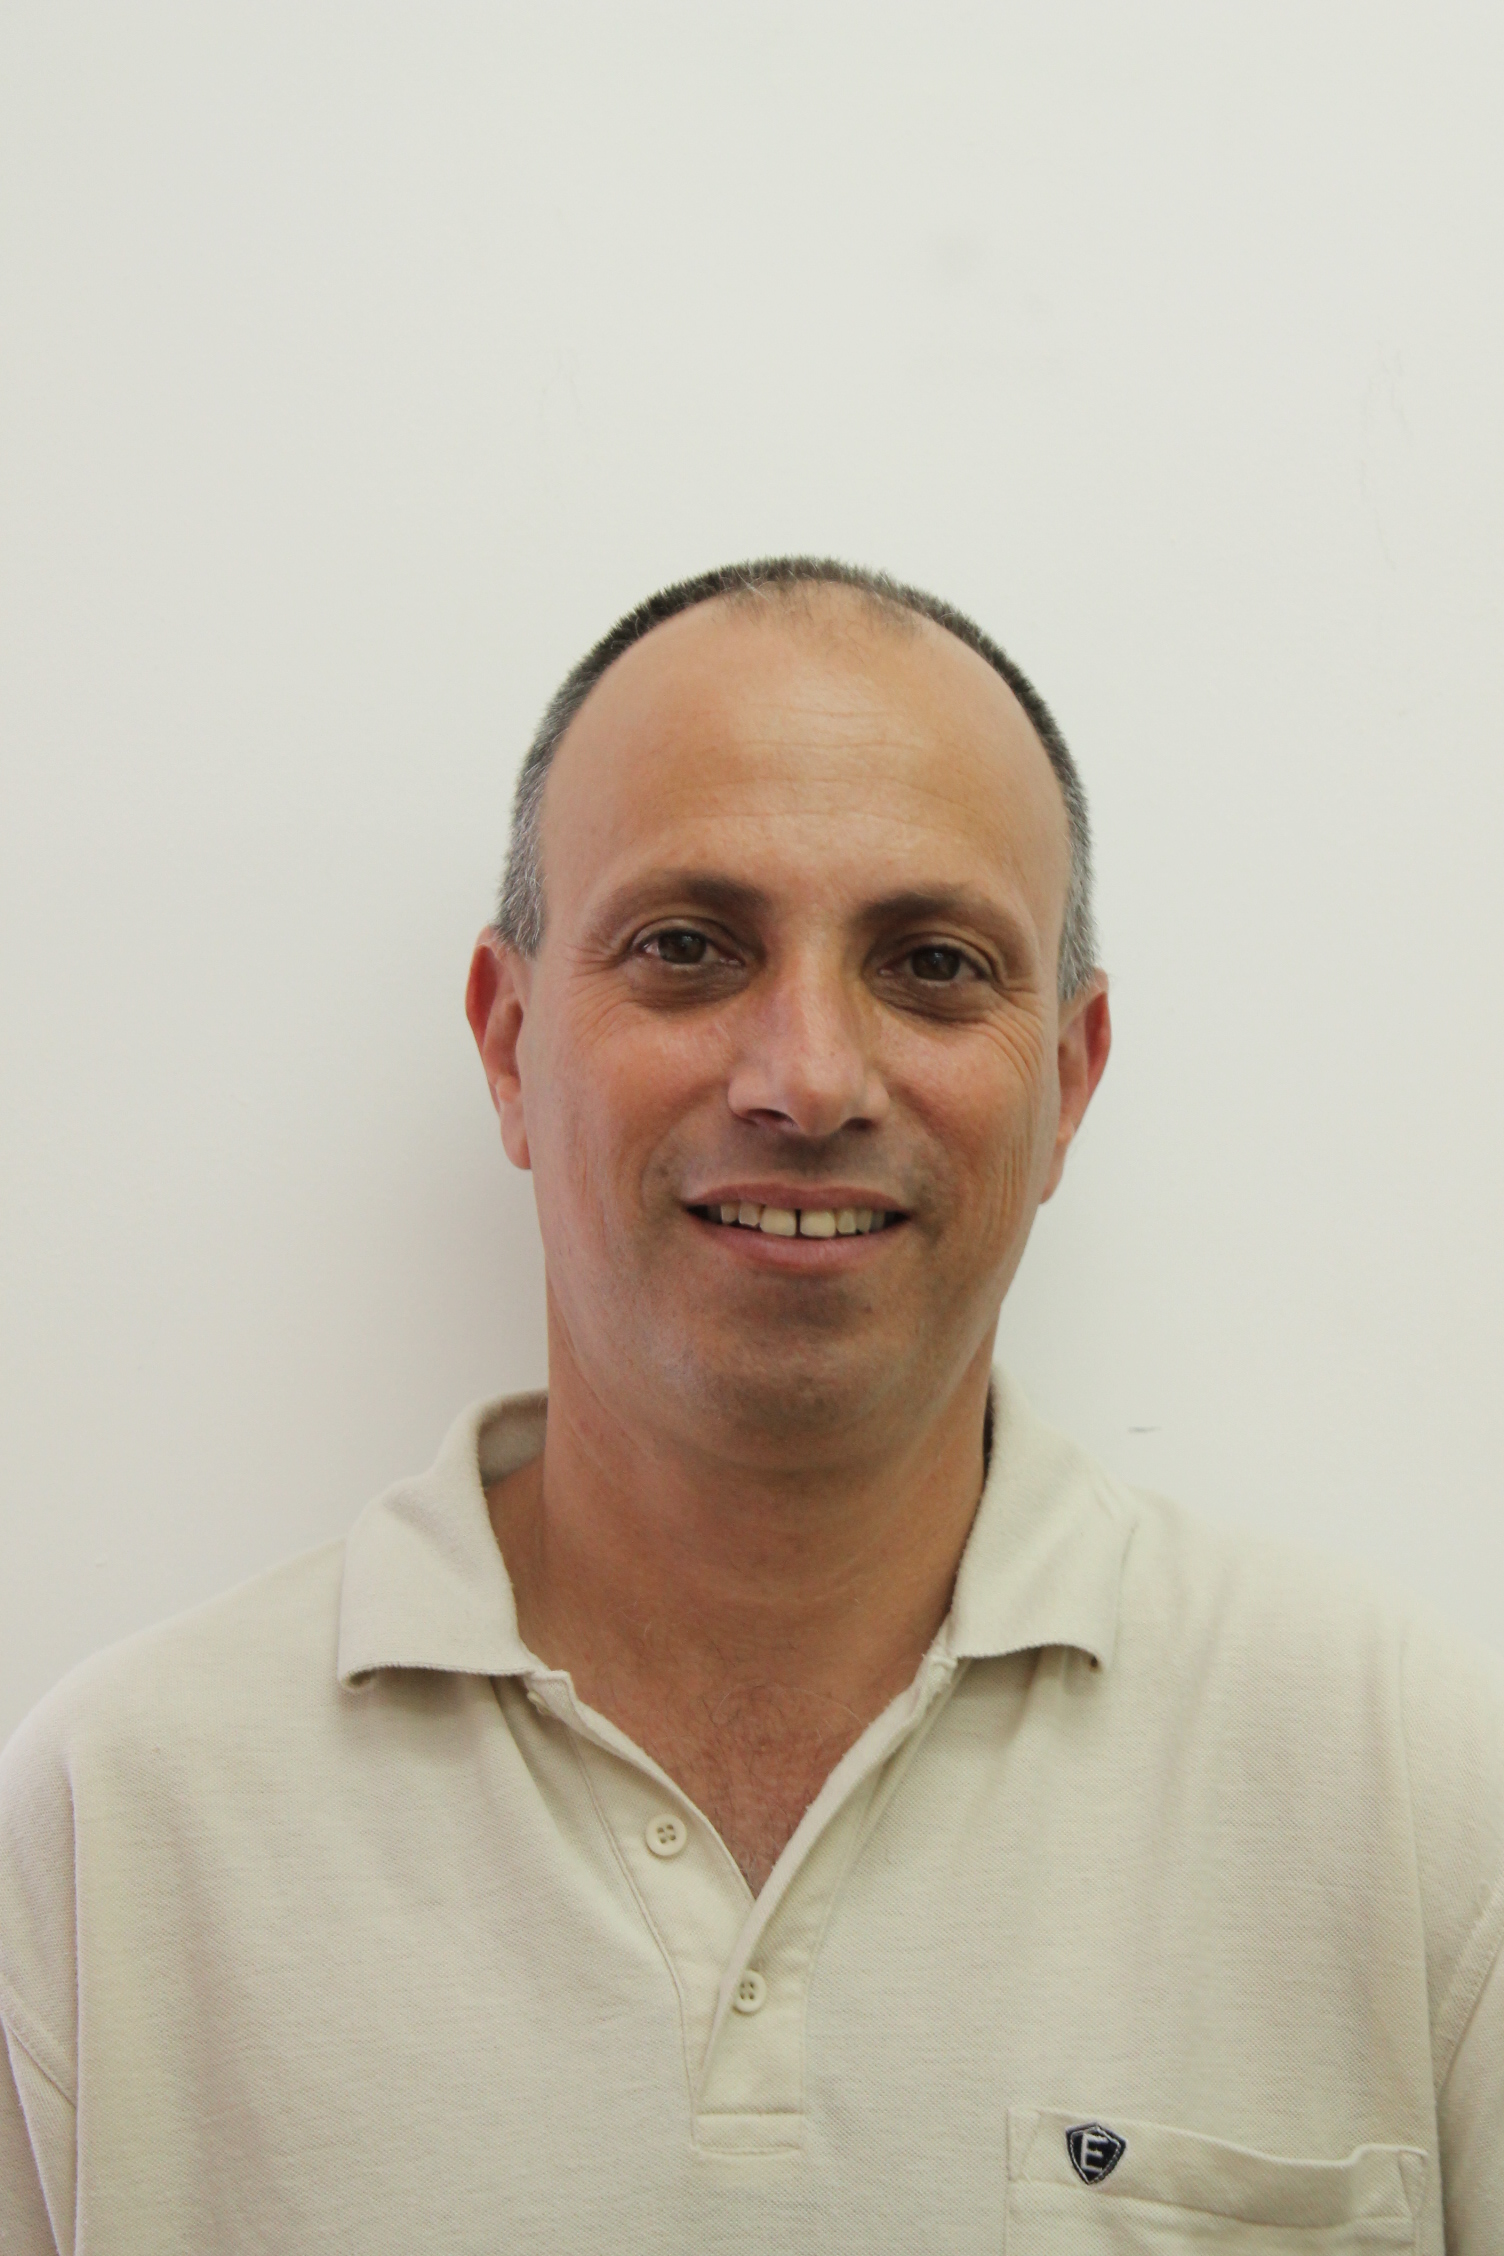 אייל רבינוביץ מנהל מחלקת שירותים טכניים. צילמה עינ (הגדל)